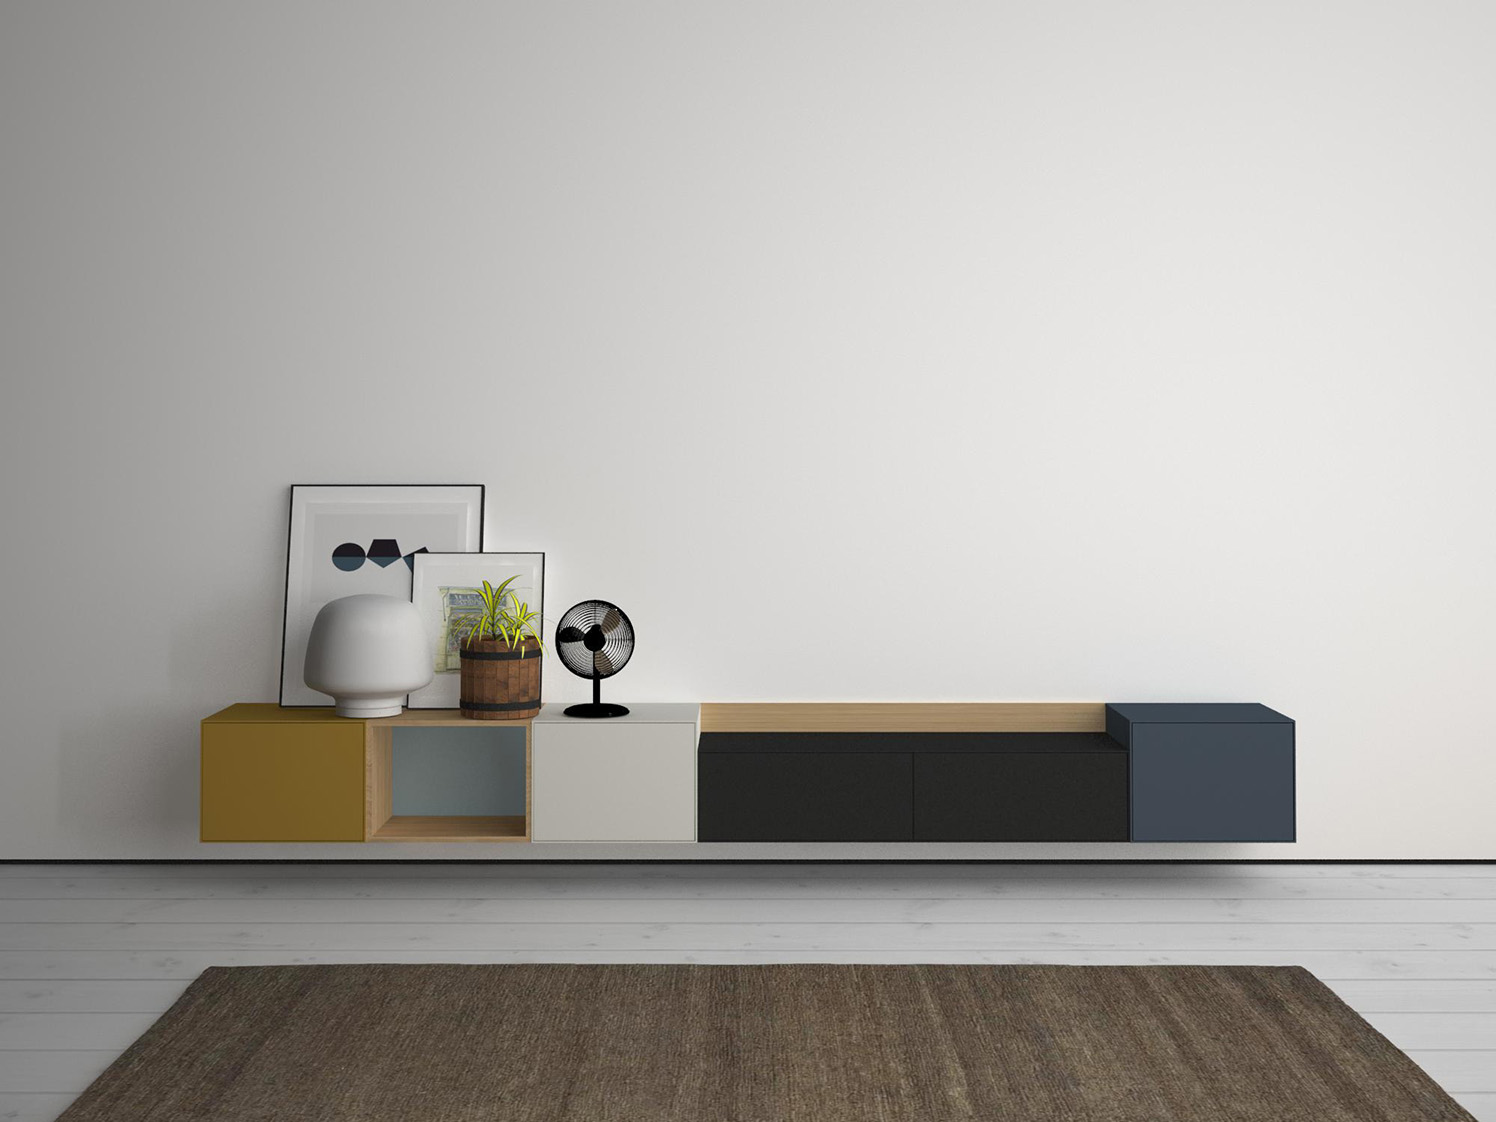 Colección LAUKI, diseño modular para ambientes modernos y estilosos.